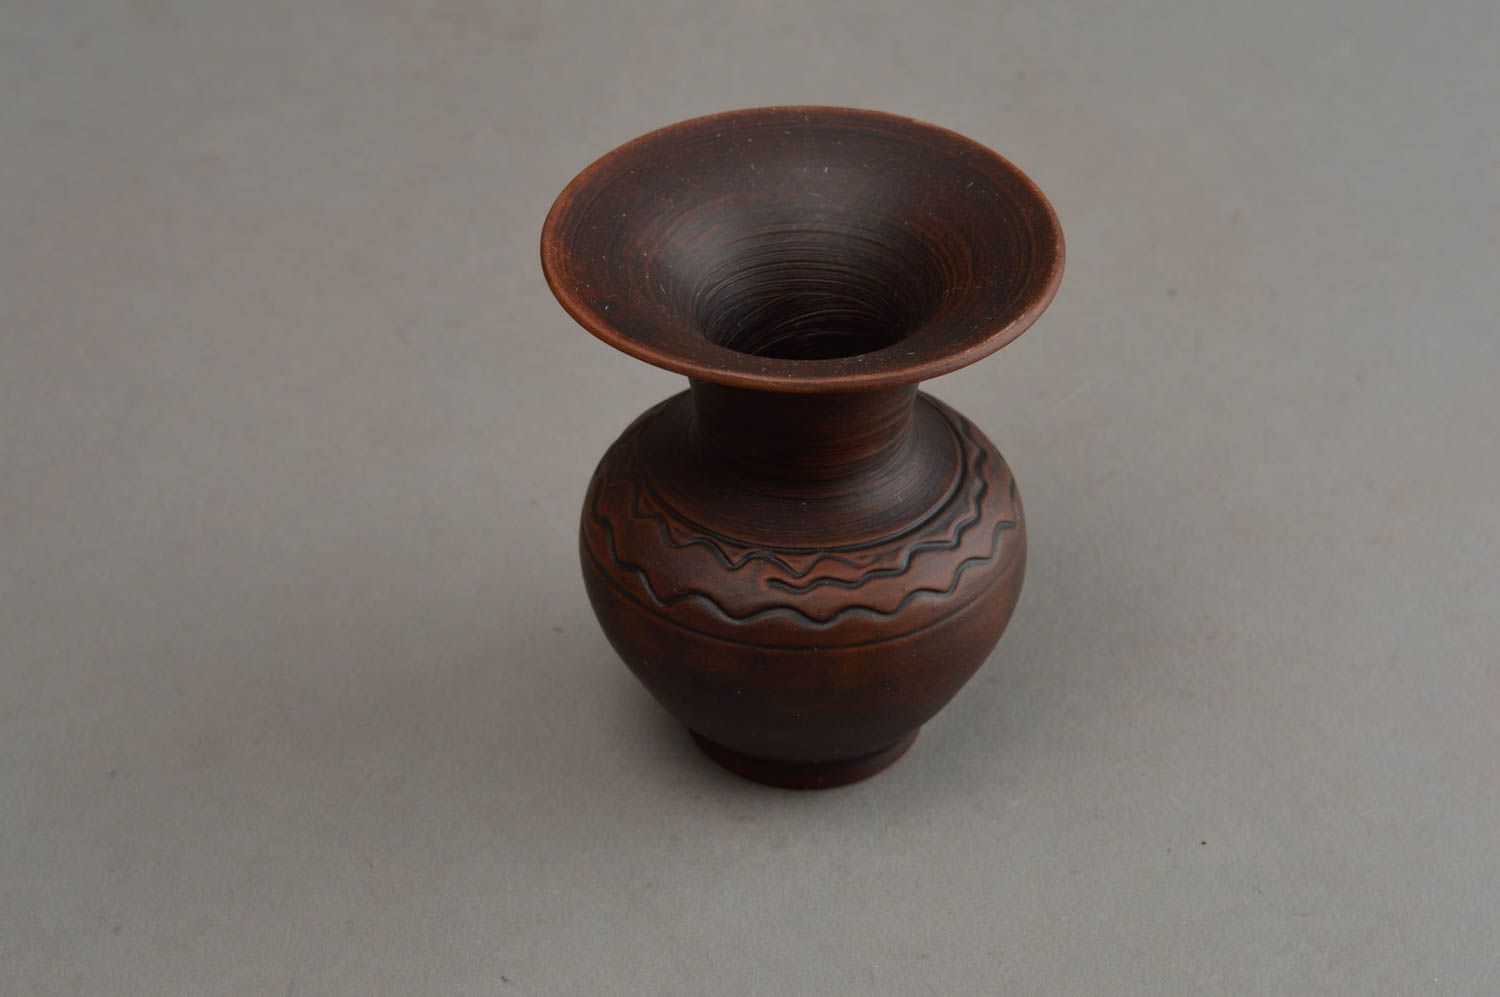 Little brown ceramic handmade flower vase for nightstand décor 3,2, 0,26 lb foto 3